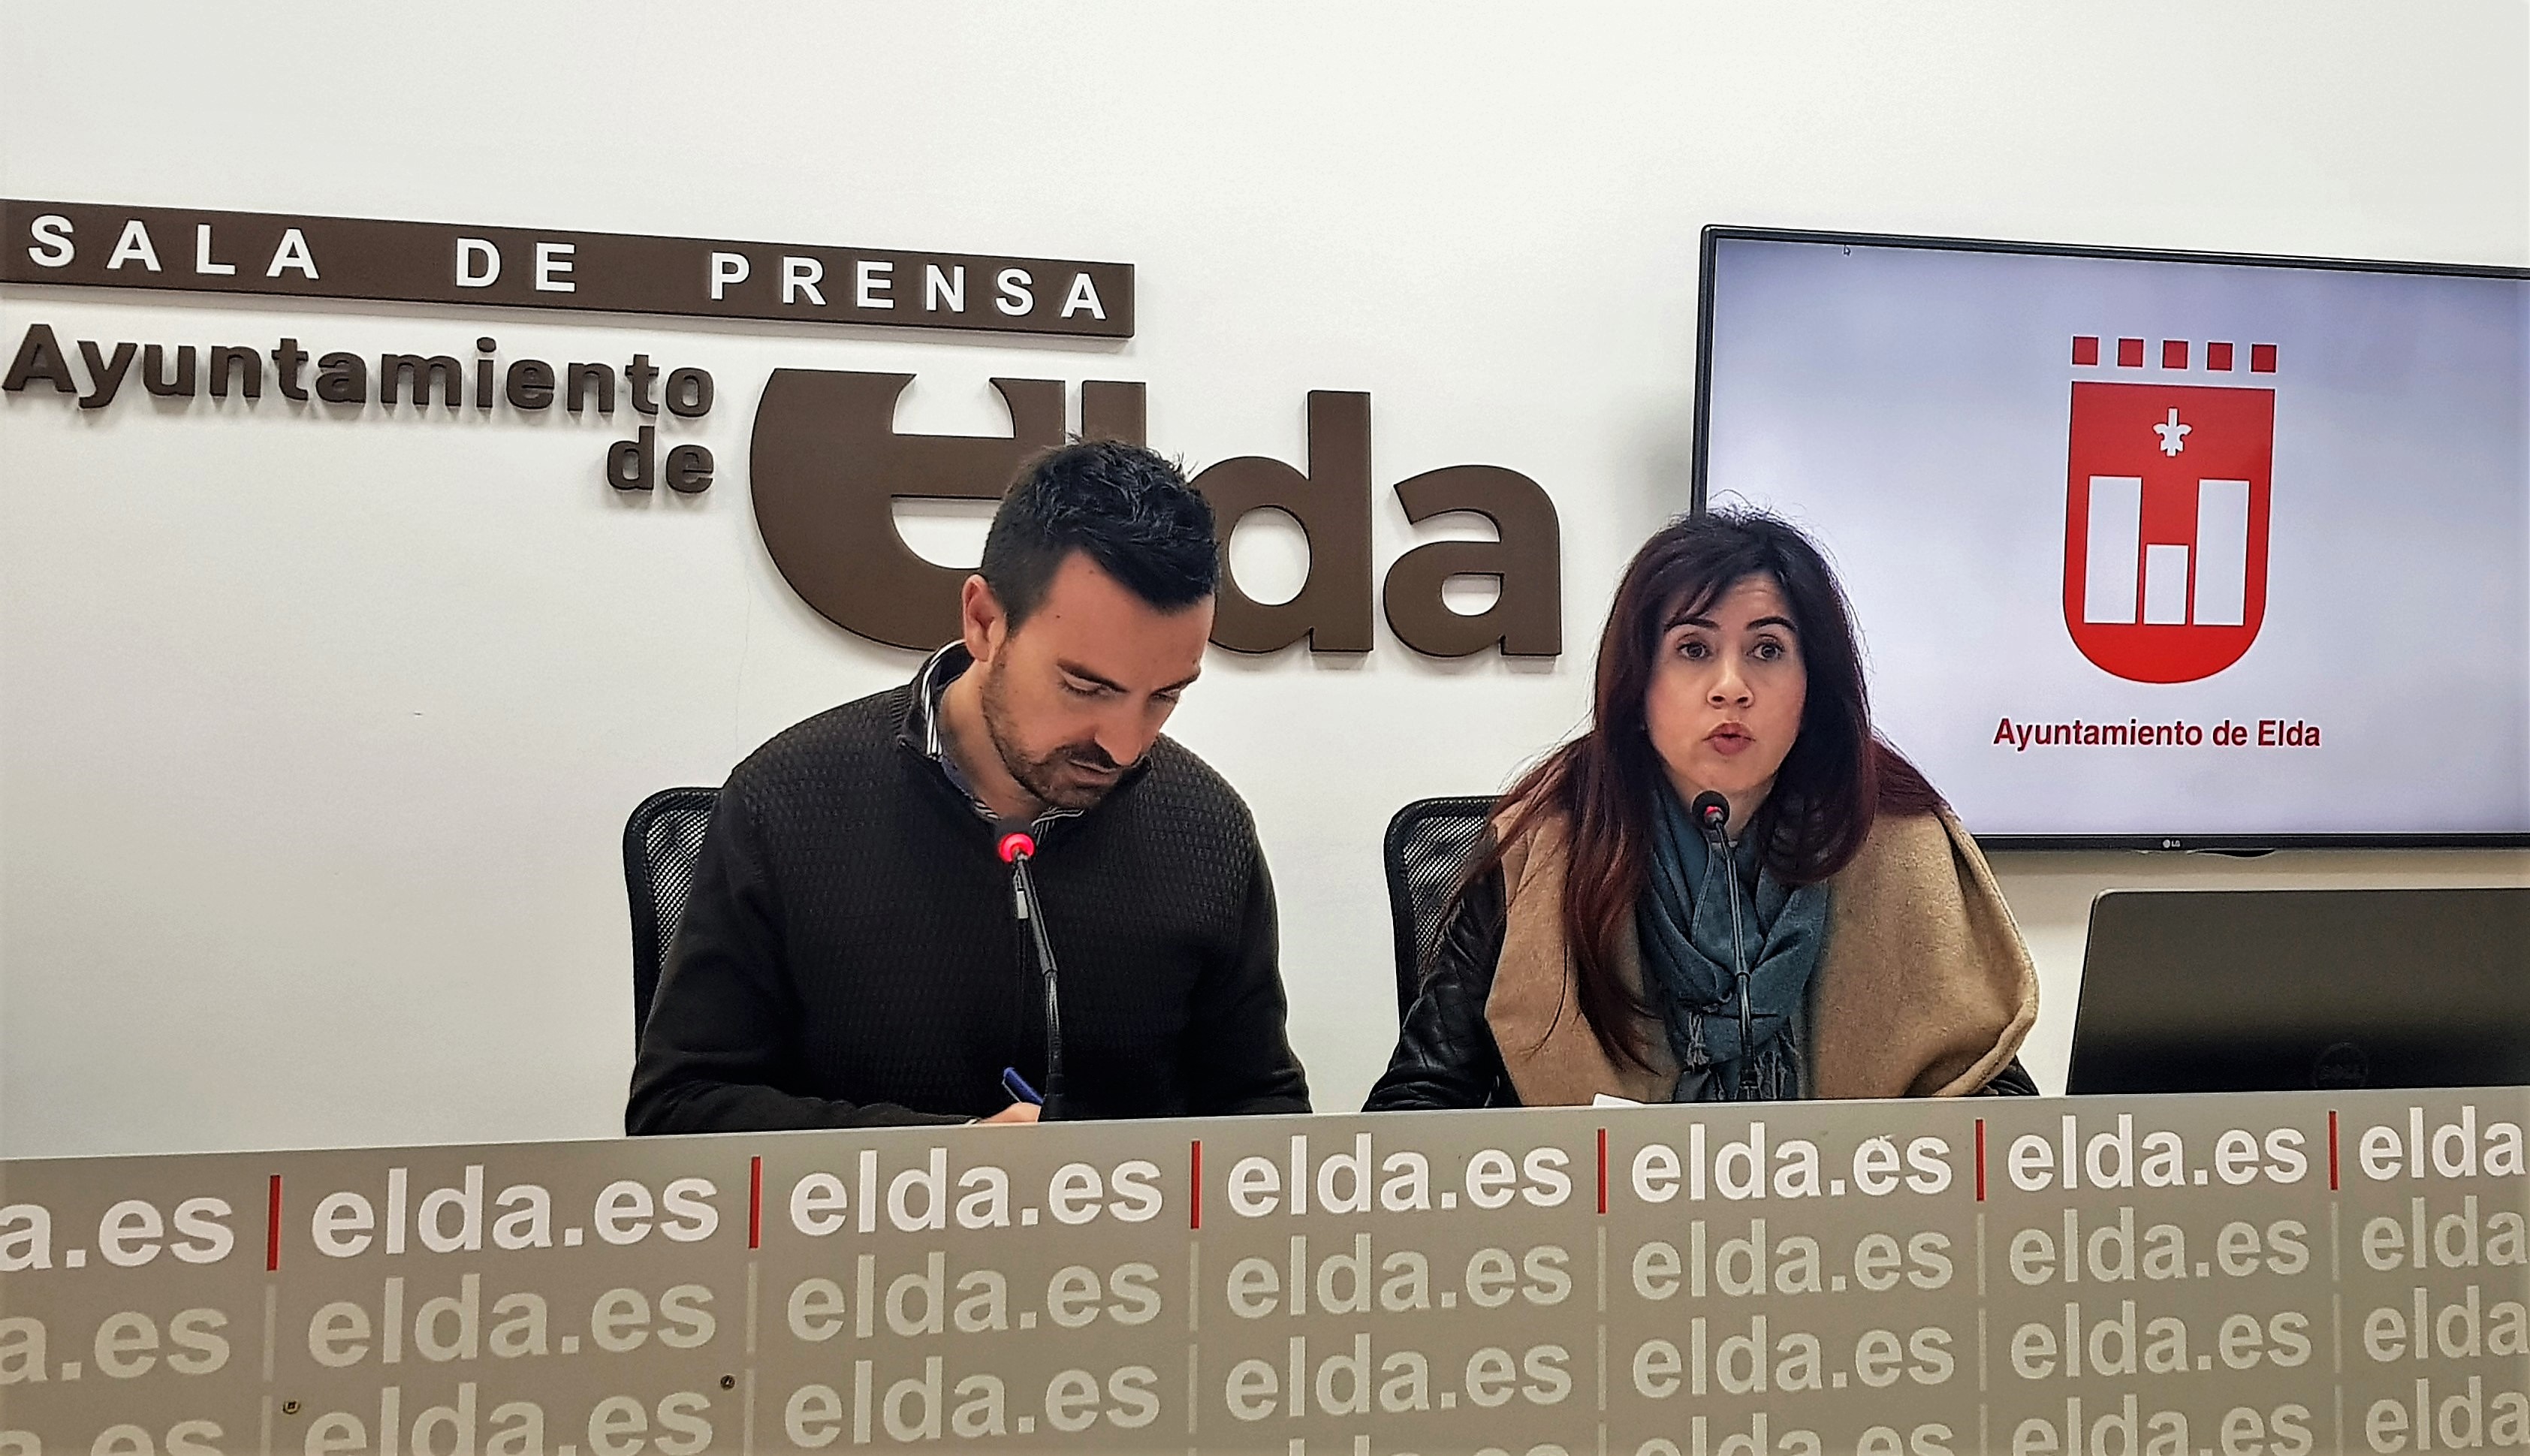 El Ayuntamiento de Elda concede 100 becas de 200 euros cada una para transporte universitario